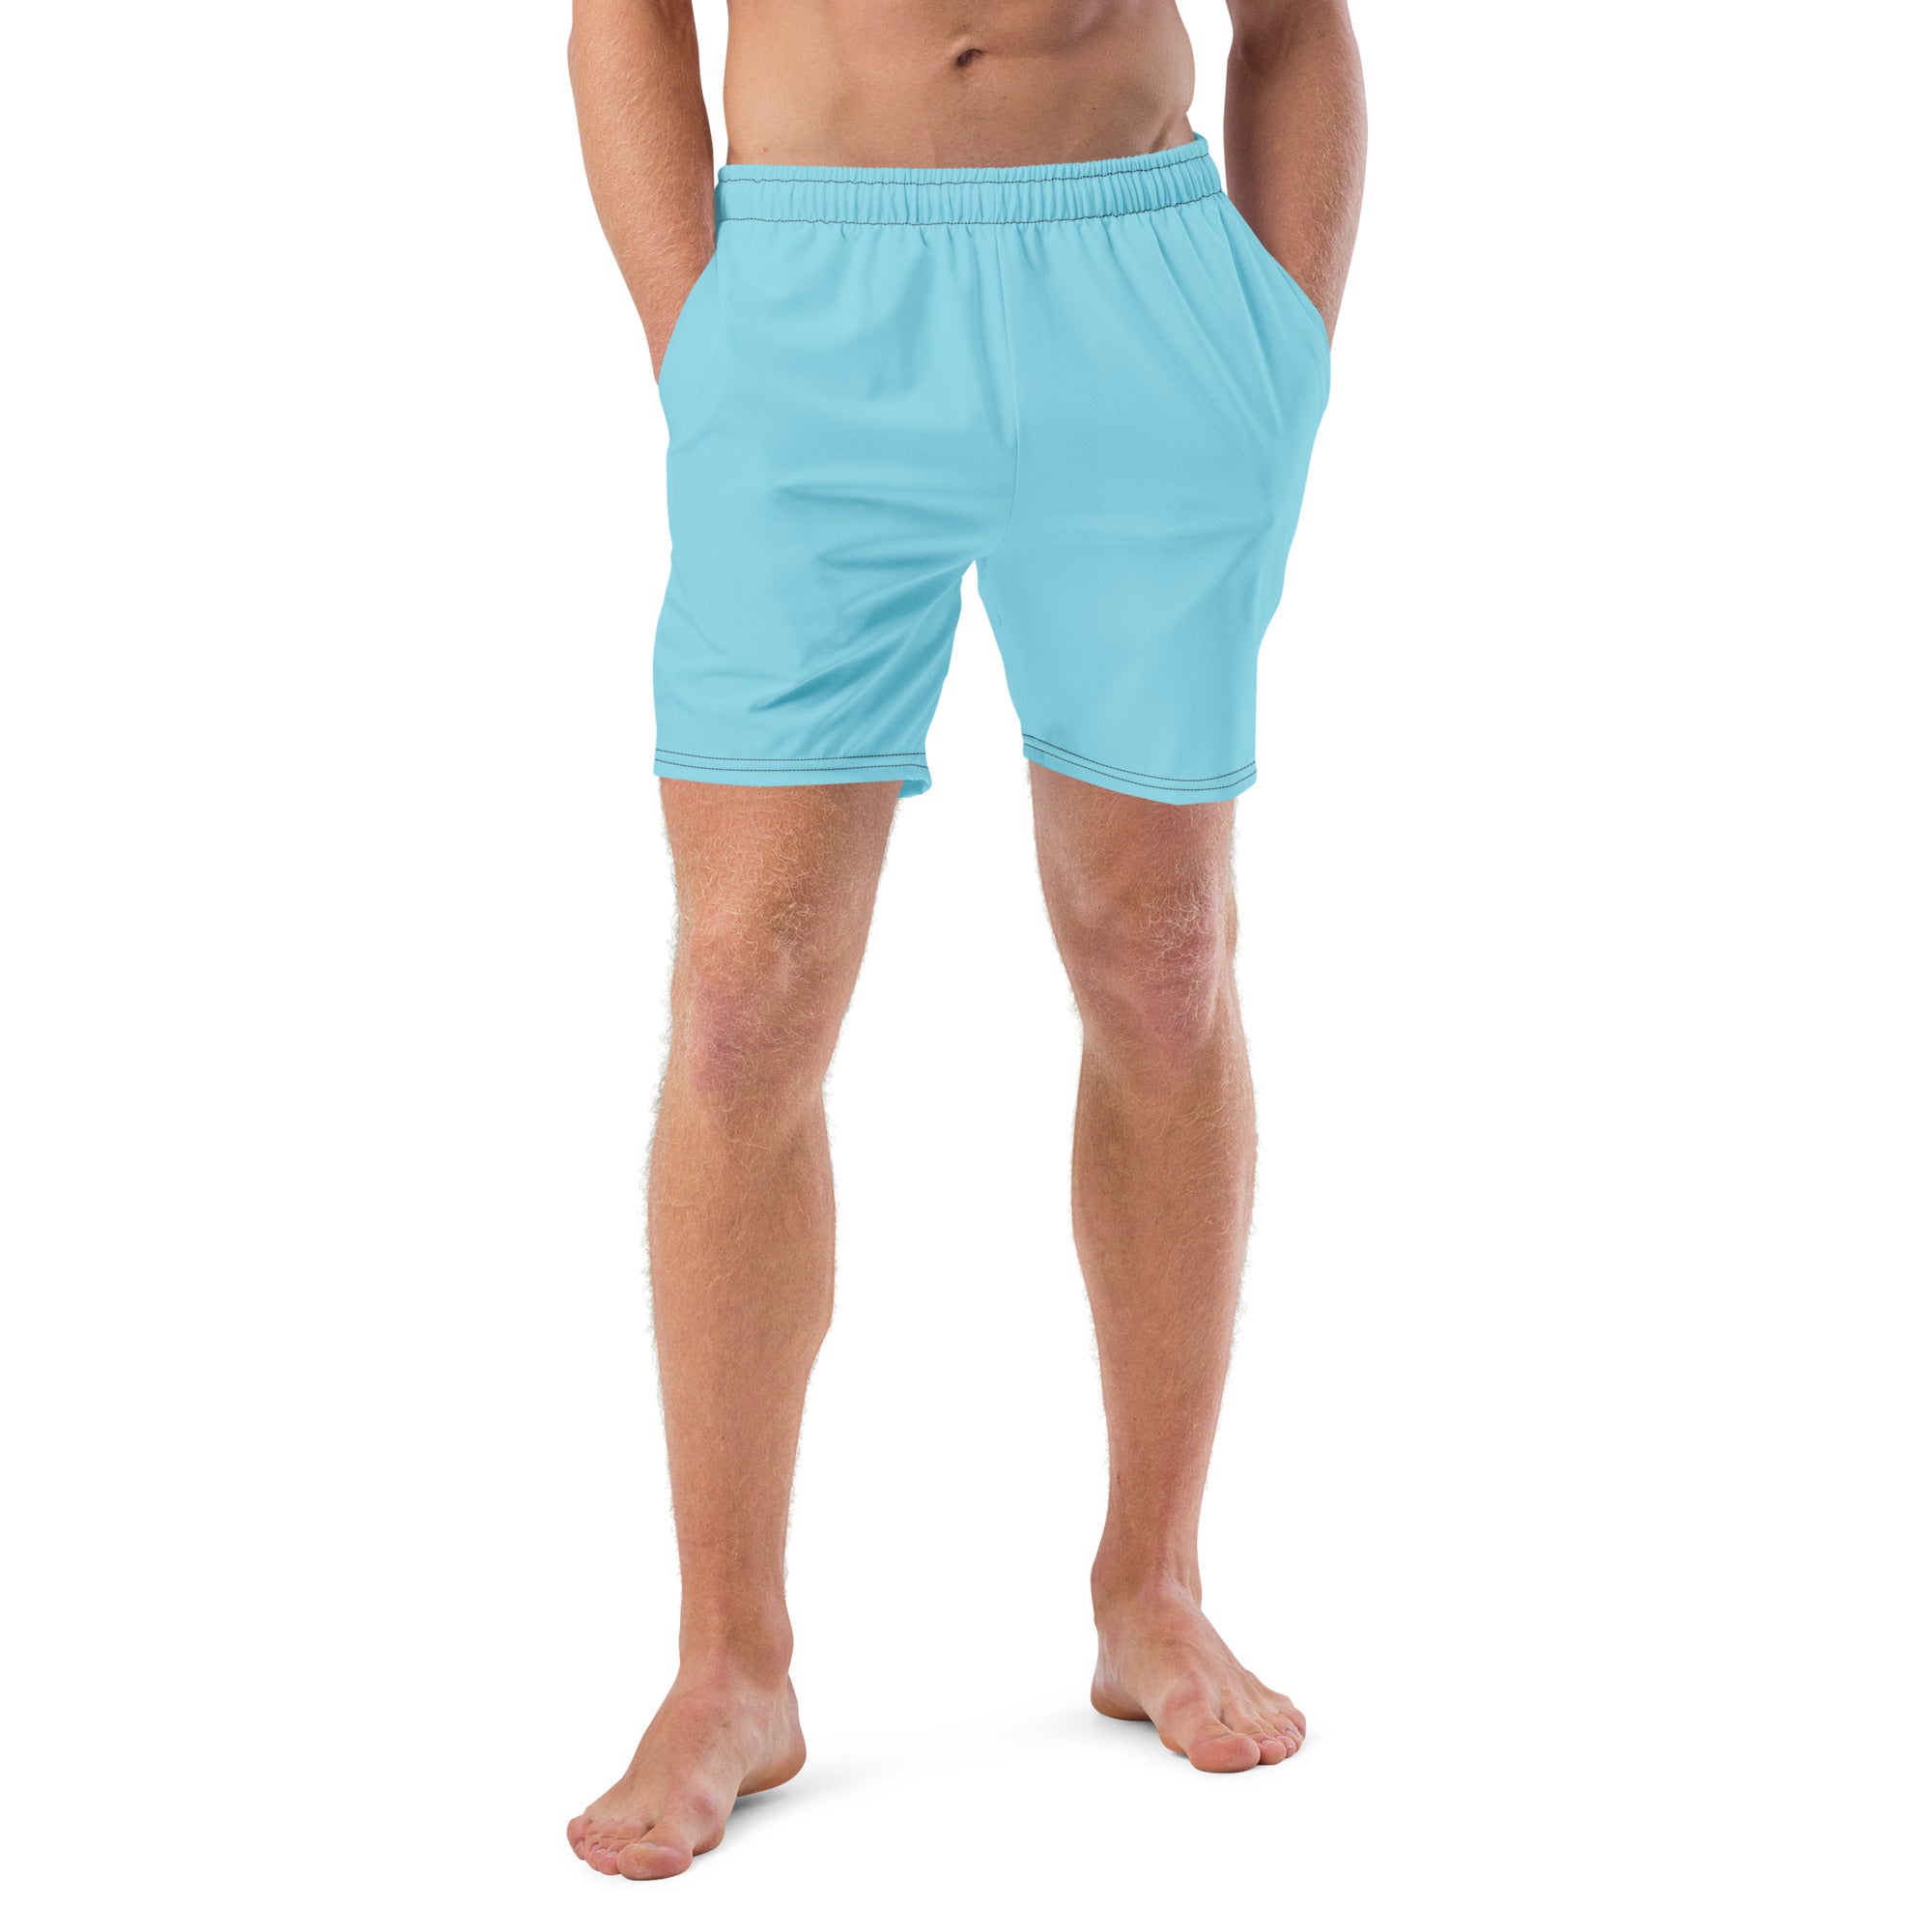 'Pastel Blue' men's swim trunks